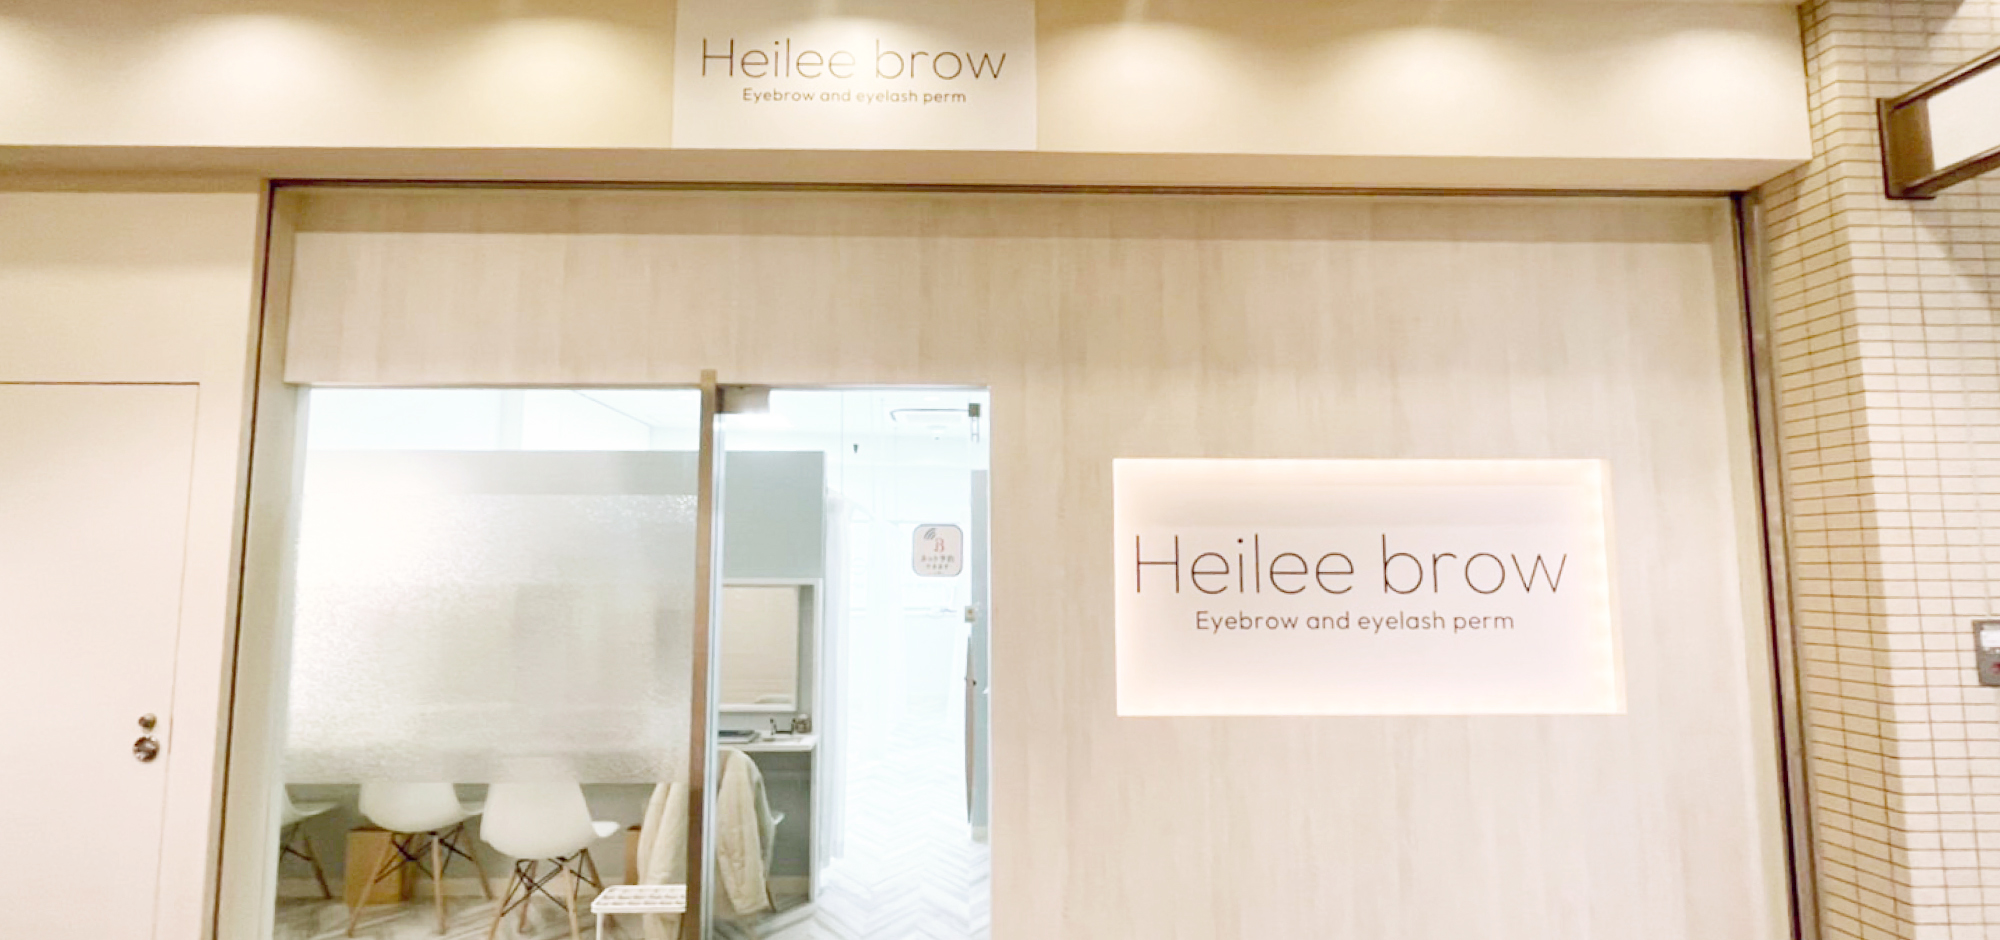 Heilee-brow あべのキューズ店